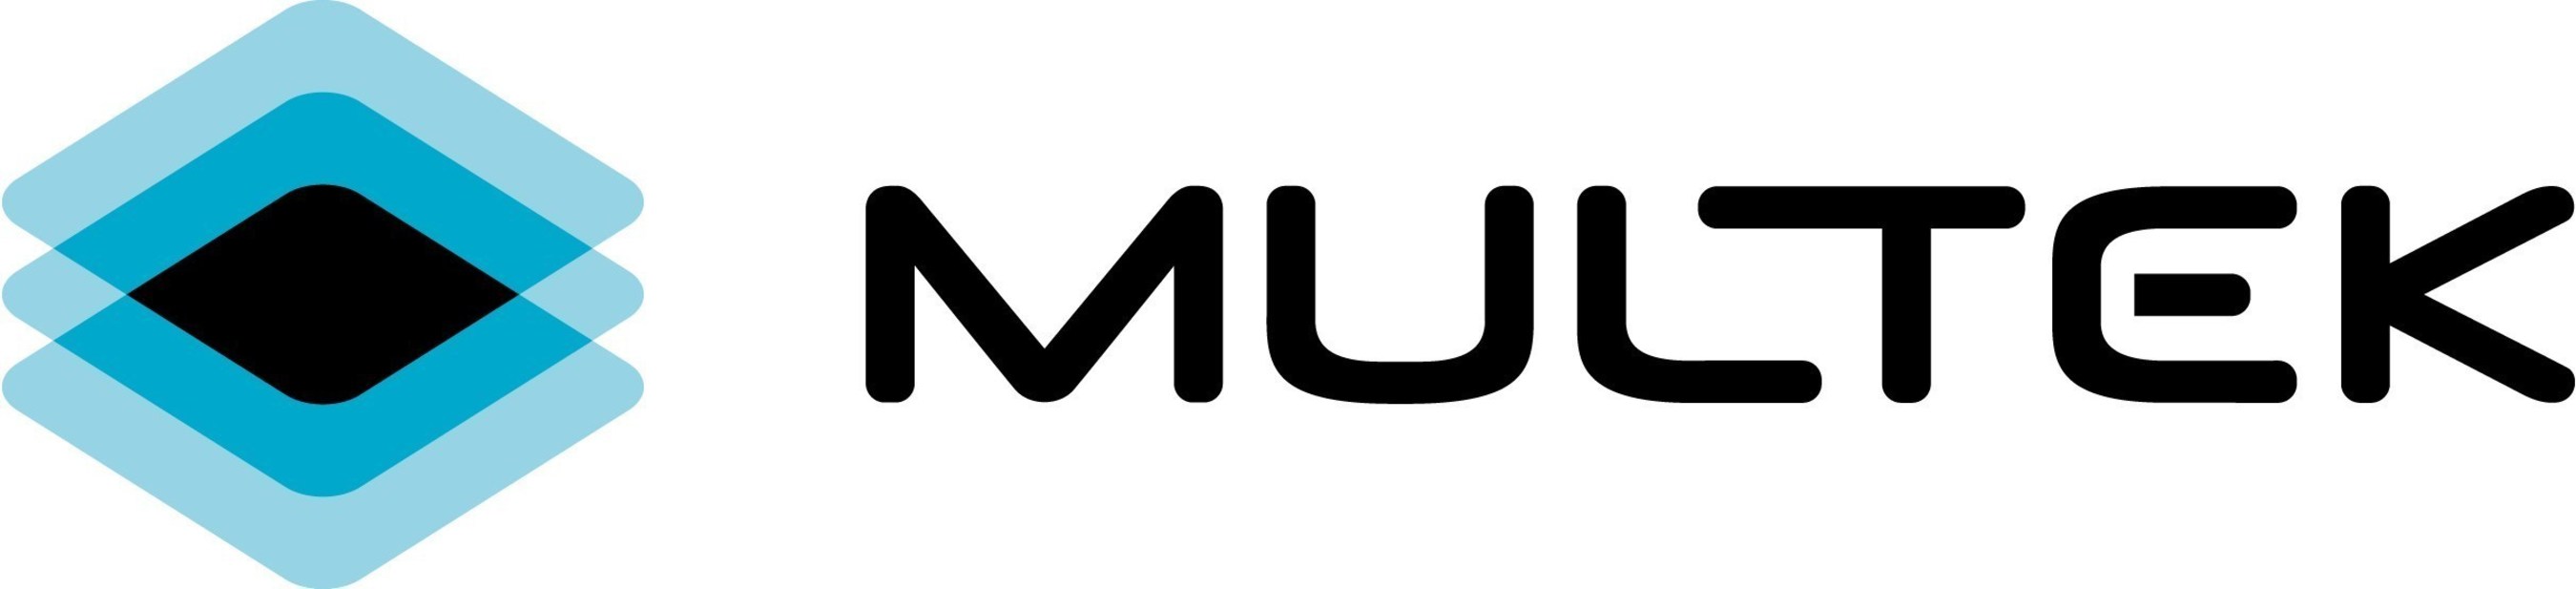 Multek logo